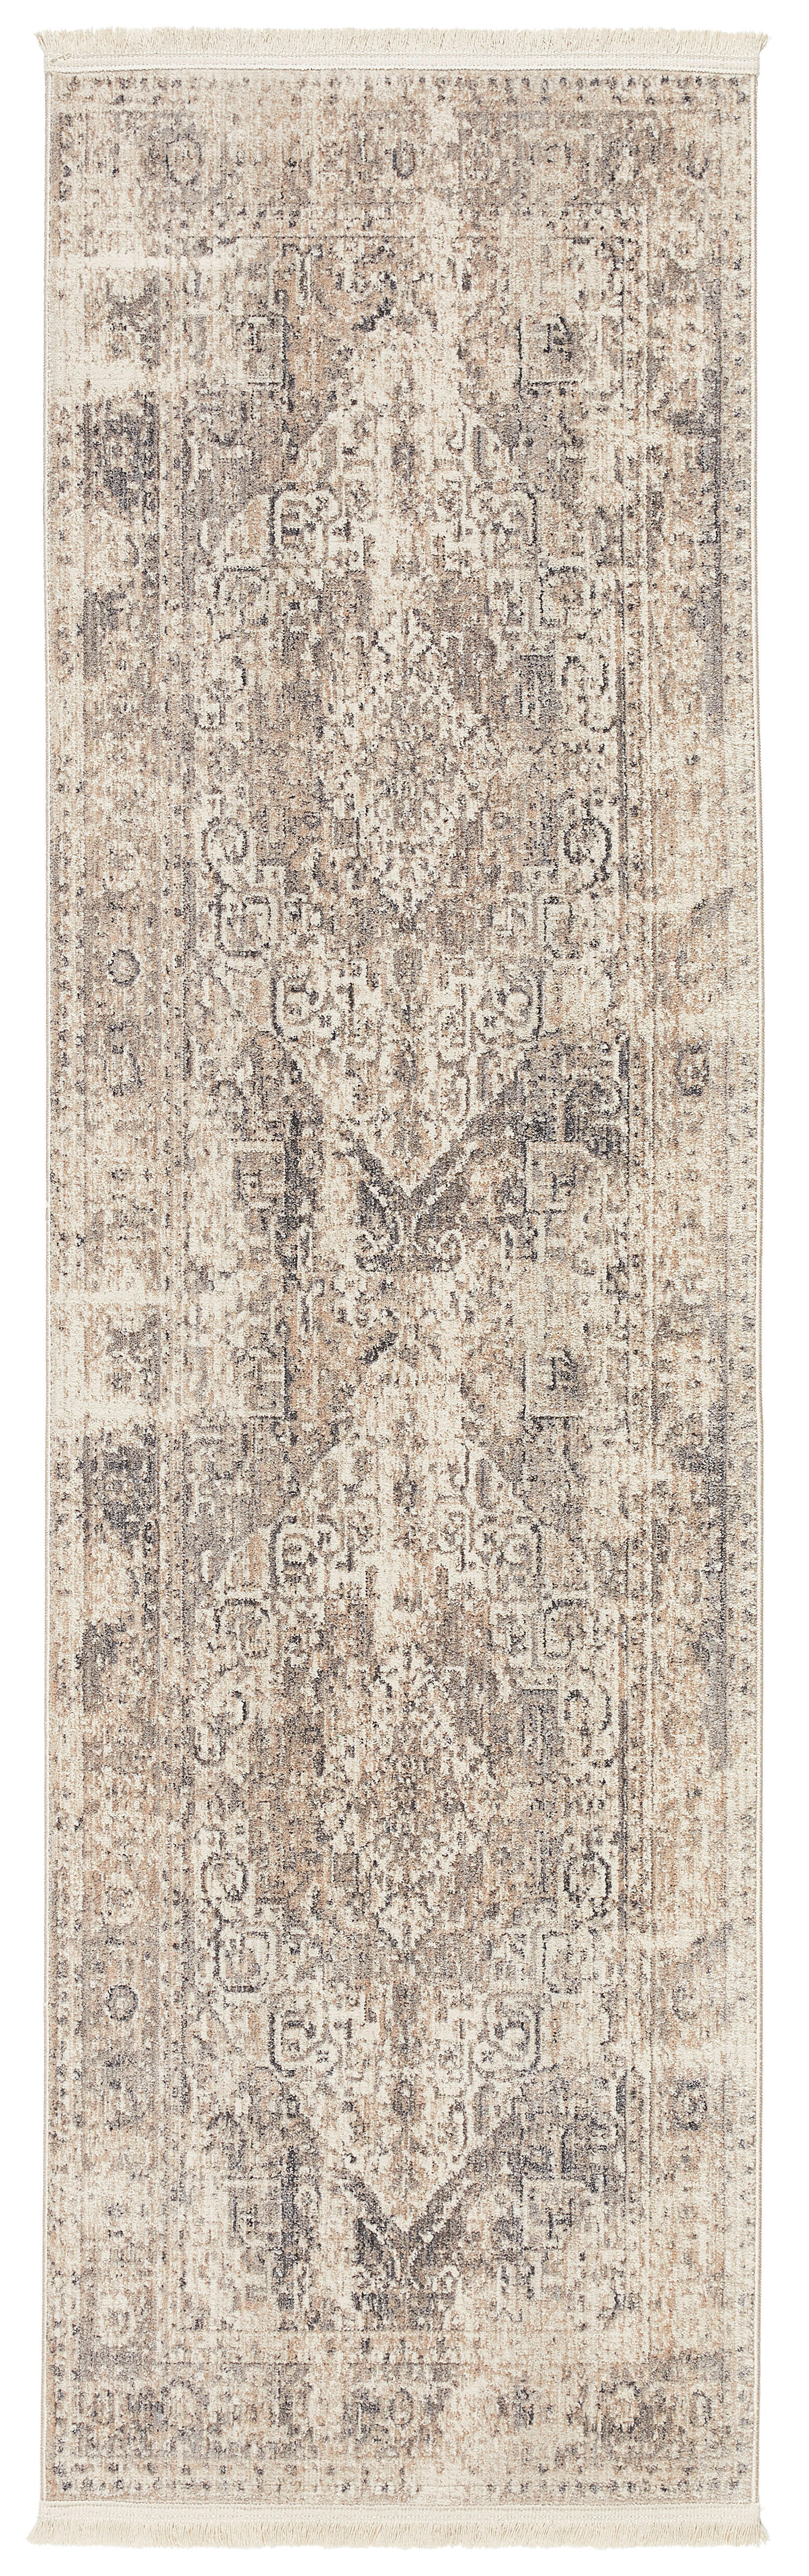 VINTAGE-TEPPICH Samarkand  70/240 cm  Grau, Beige   - Beige/Grau, LIFESTYLE, Kunststoff/Textil (70/240cm) - Novel